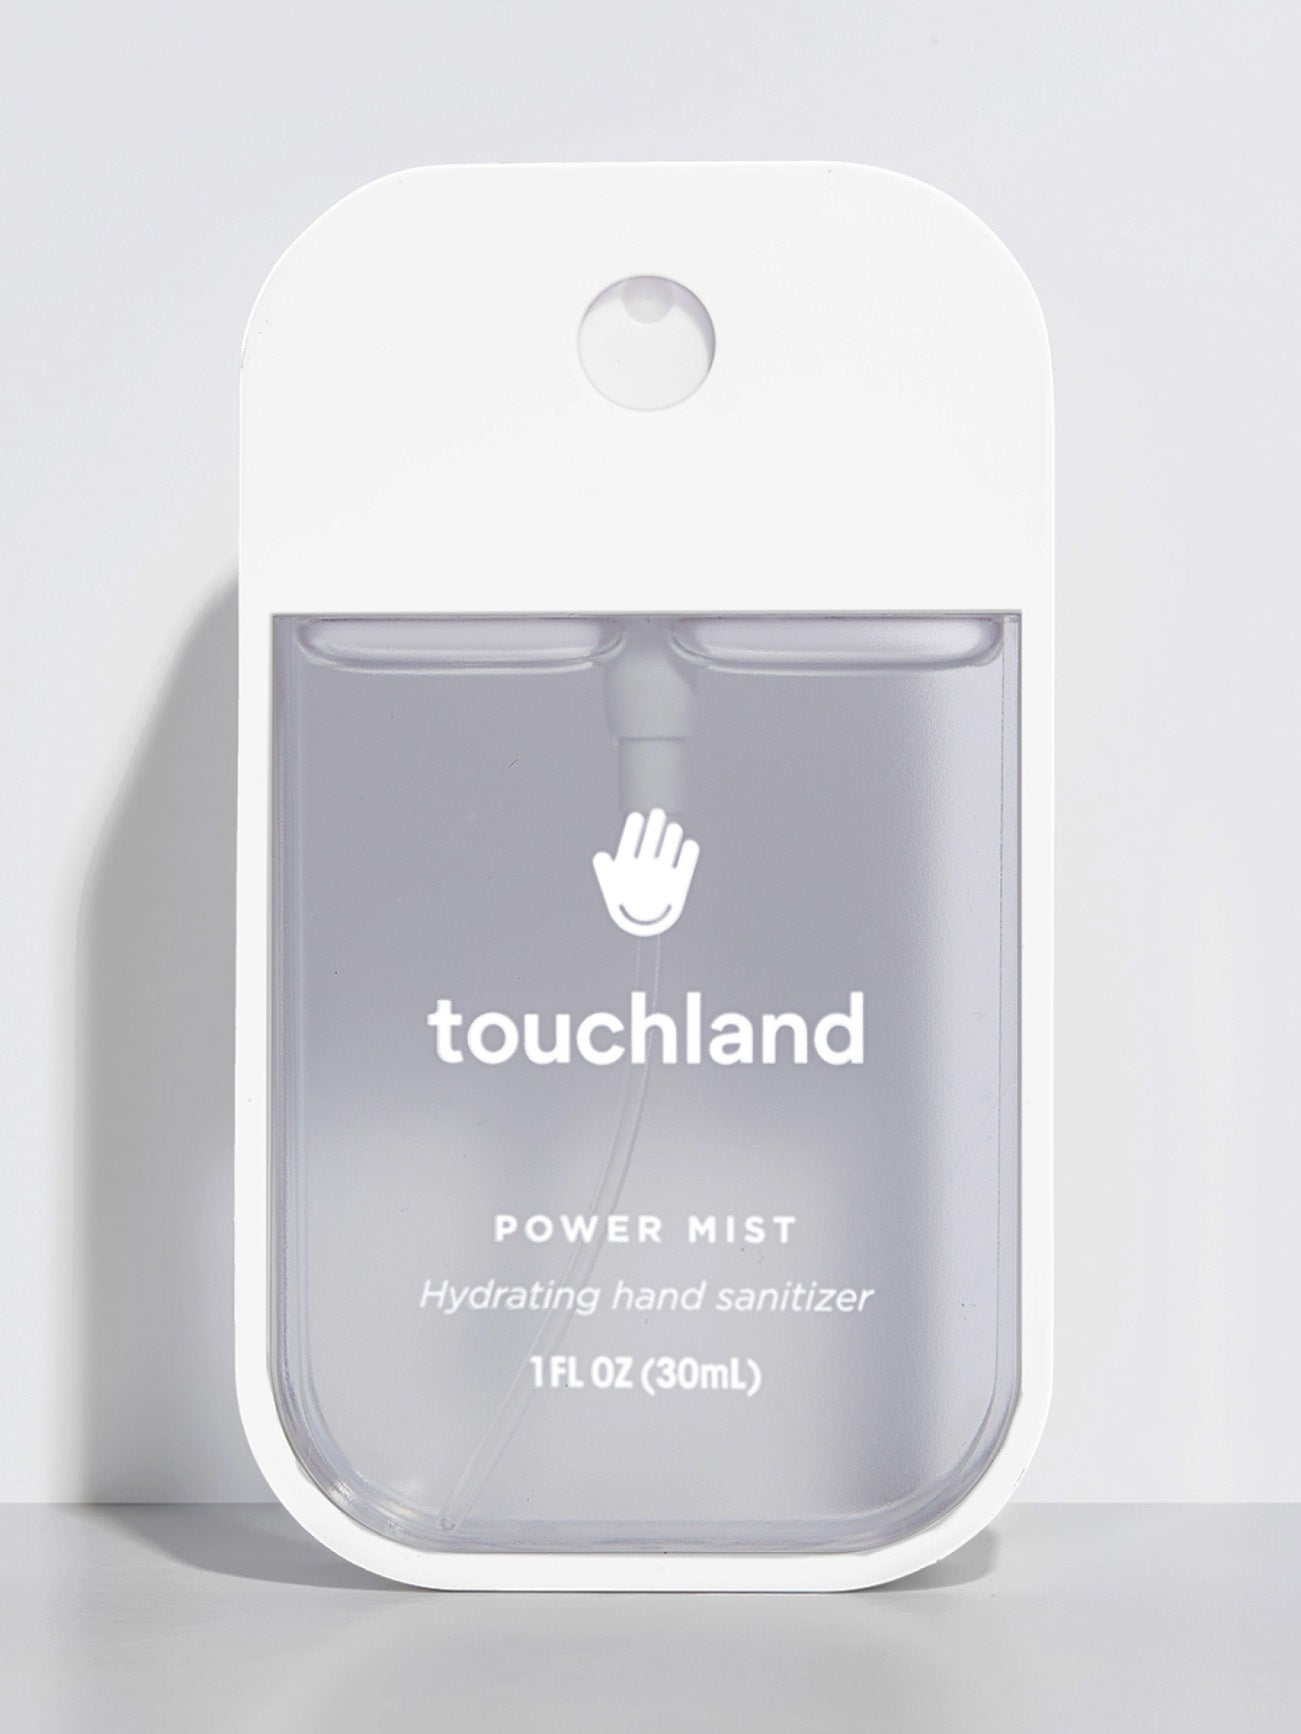 beach coco power mist hand sanitizer